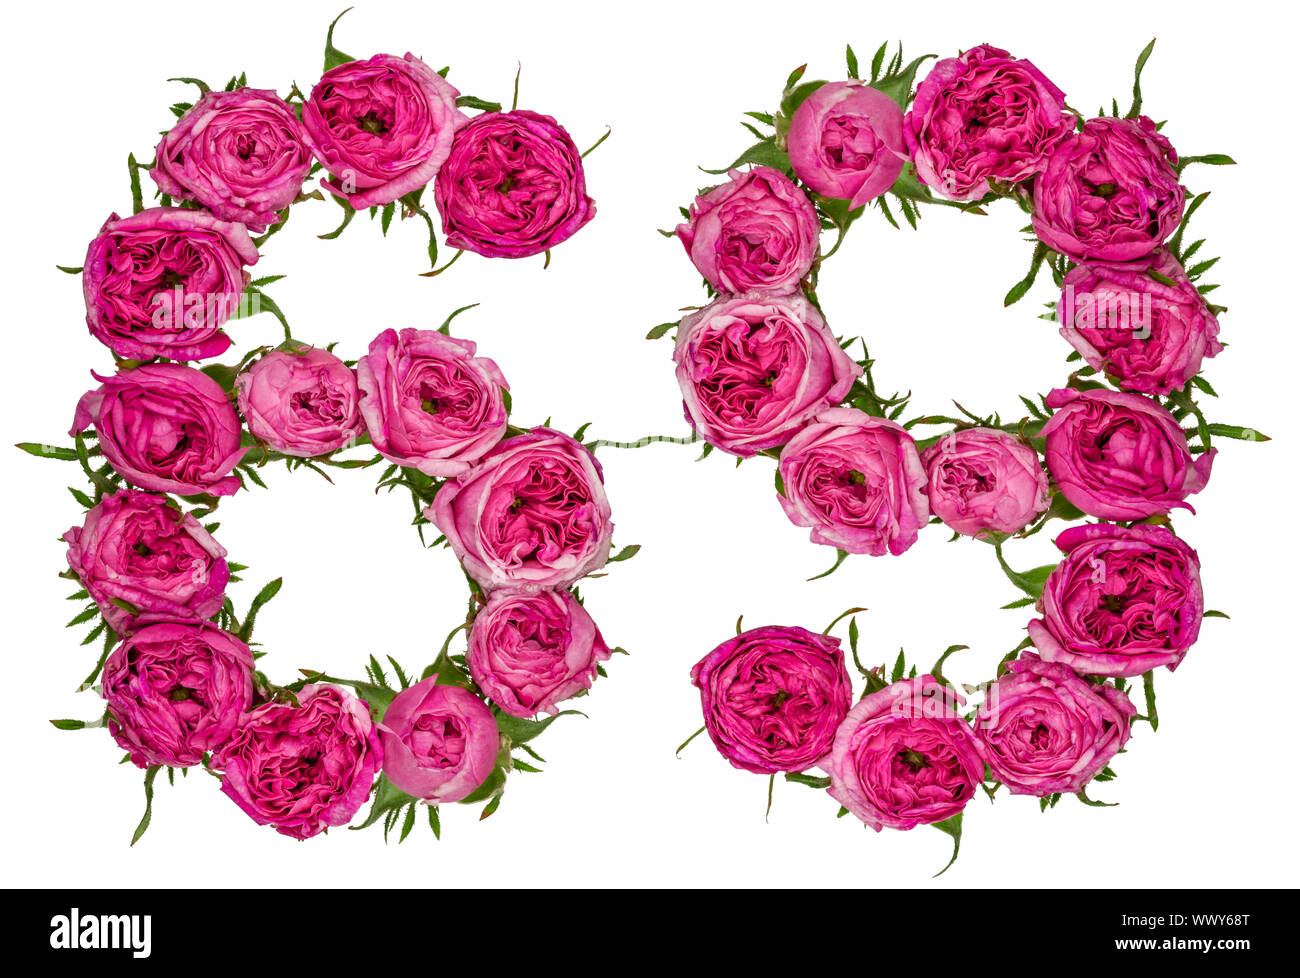 Chiffre arabe 69, soixante-neuf, de fleurs de rose, rouge isolé sur fond blanc Banque D'Images